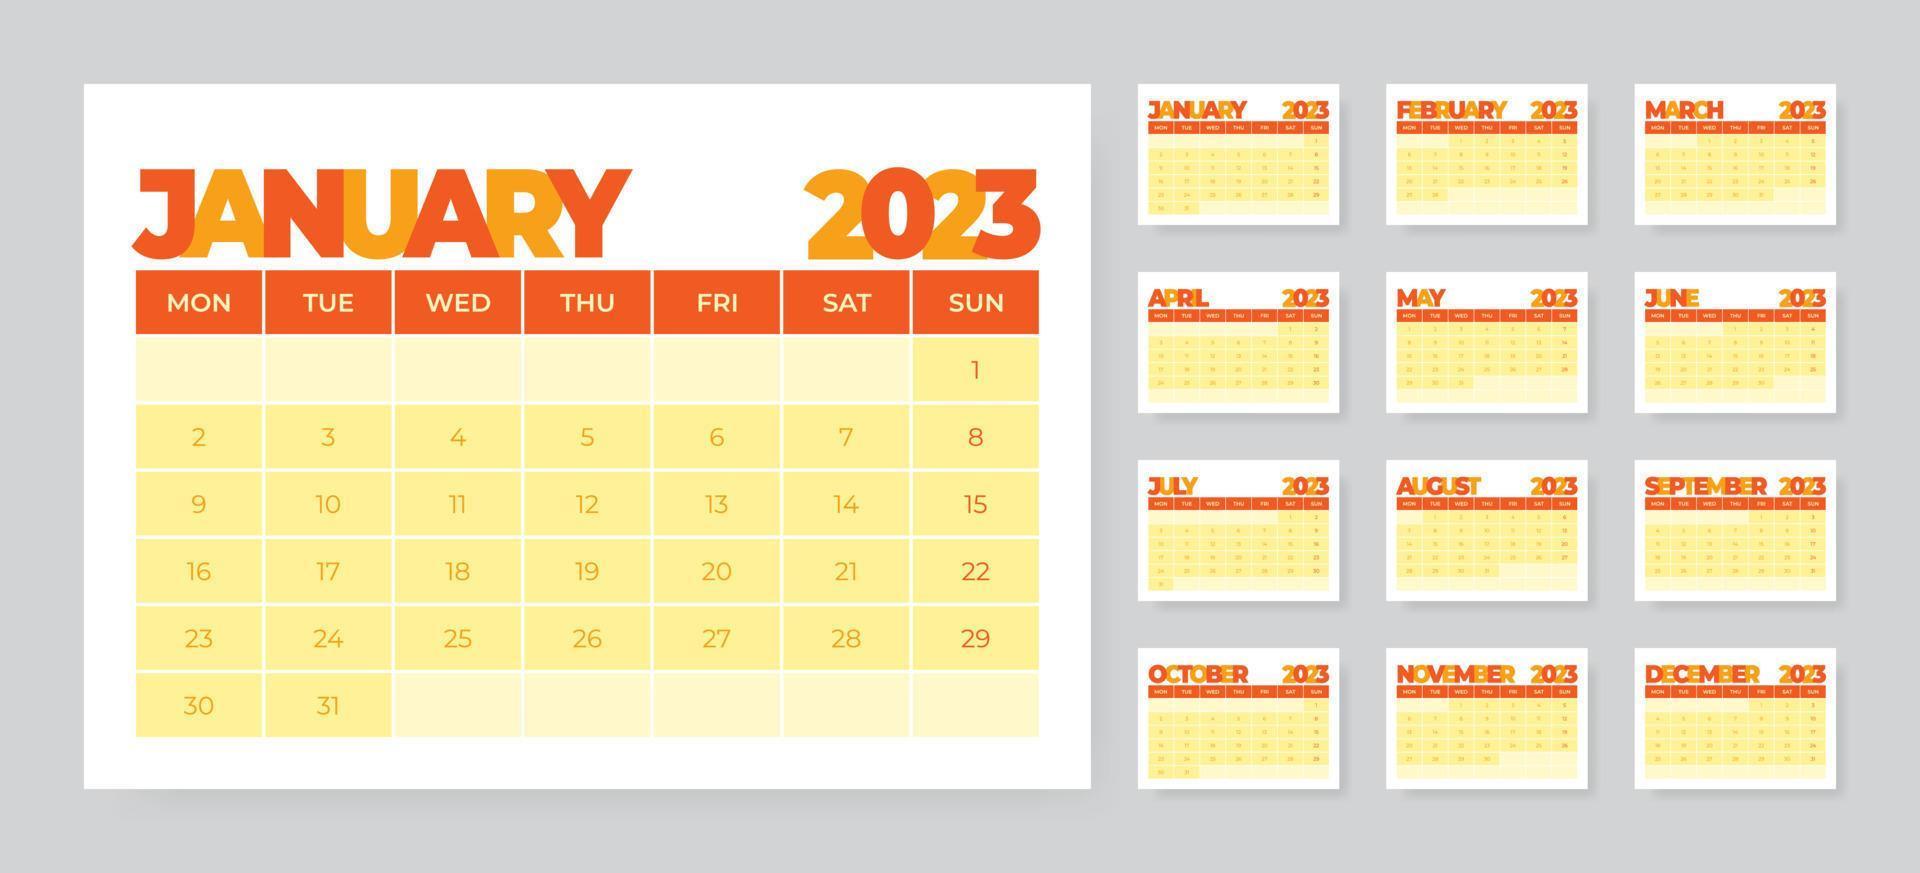 modelo de calendário de mesa mensal para o ano de 2023. semana começa na segunda vetor